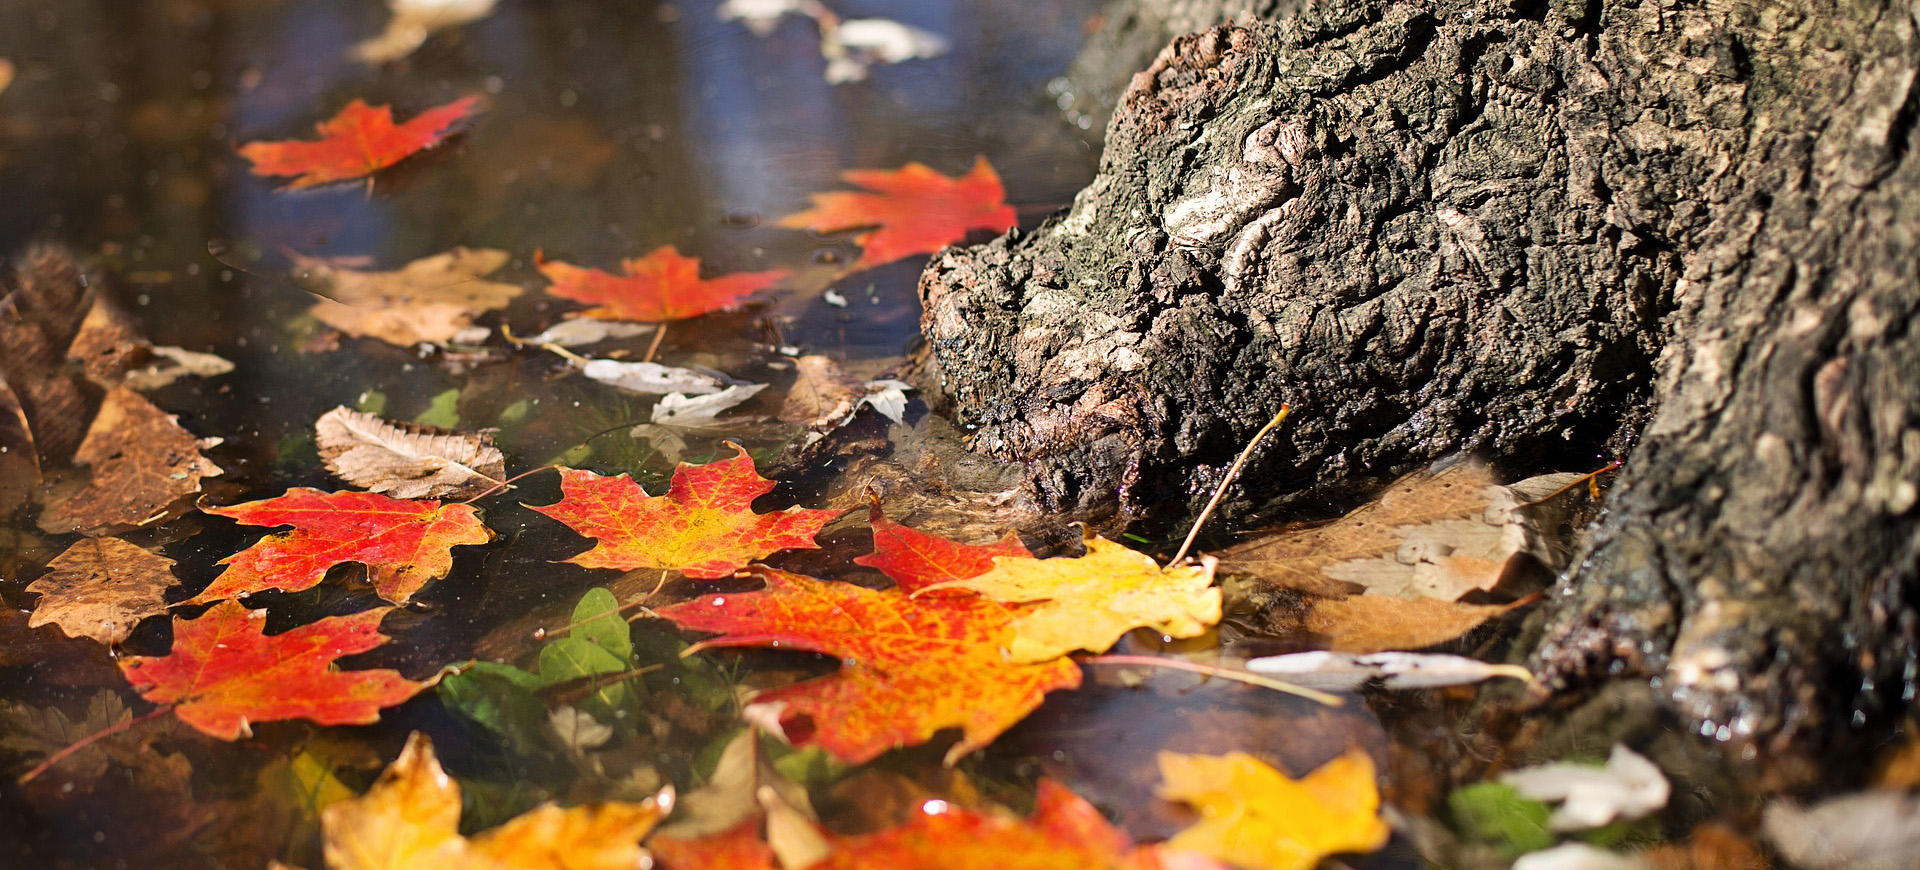 Das Bild zeigt Herbstblätter im Wasser.